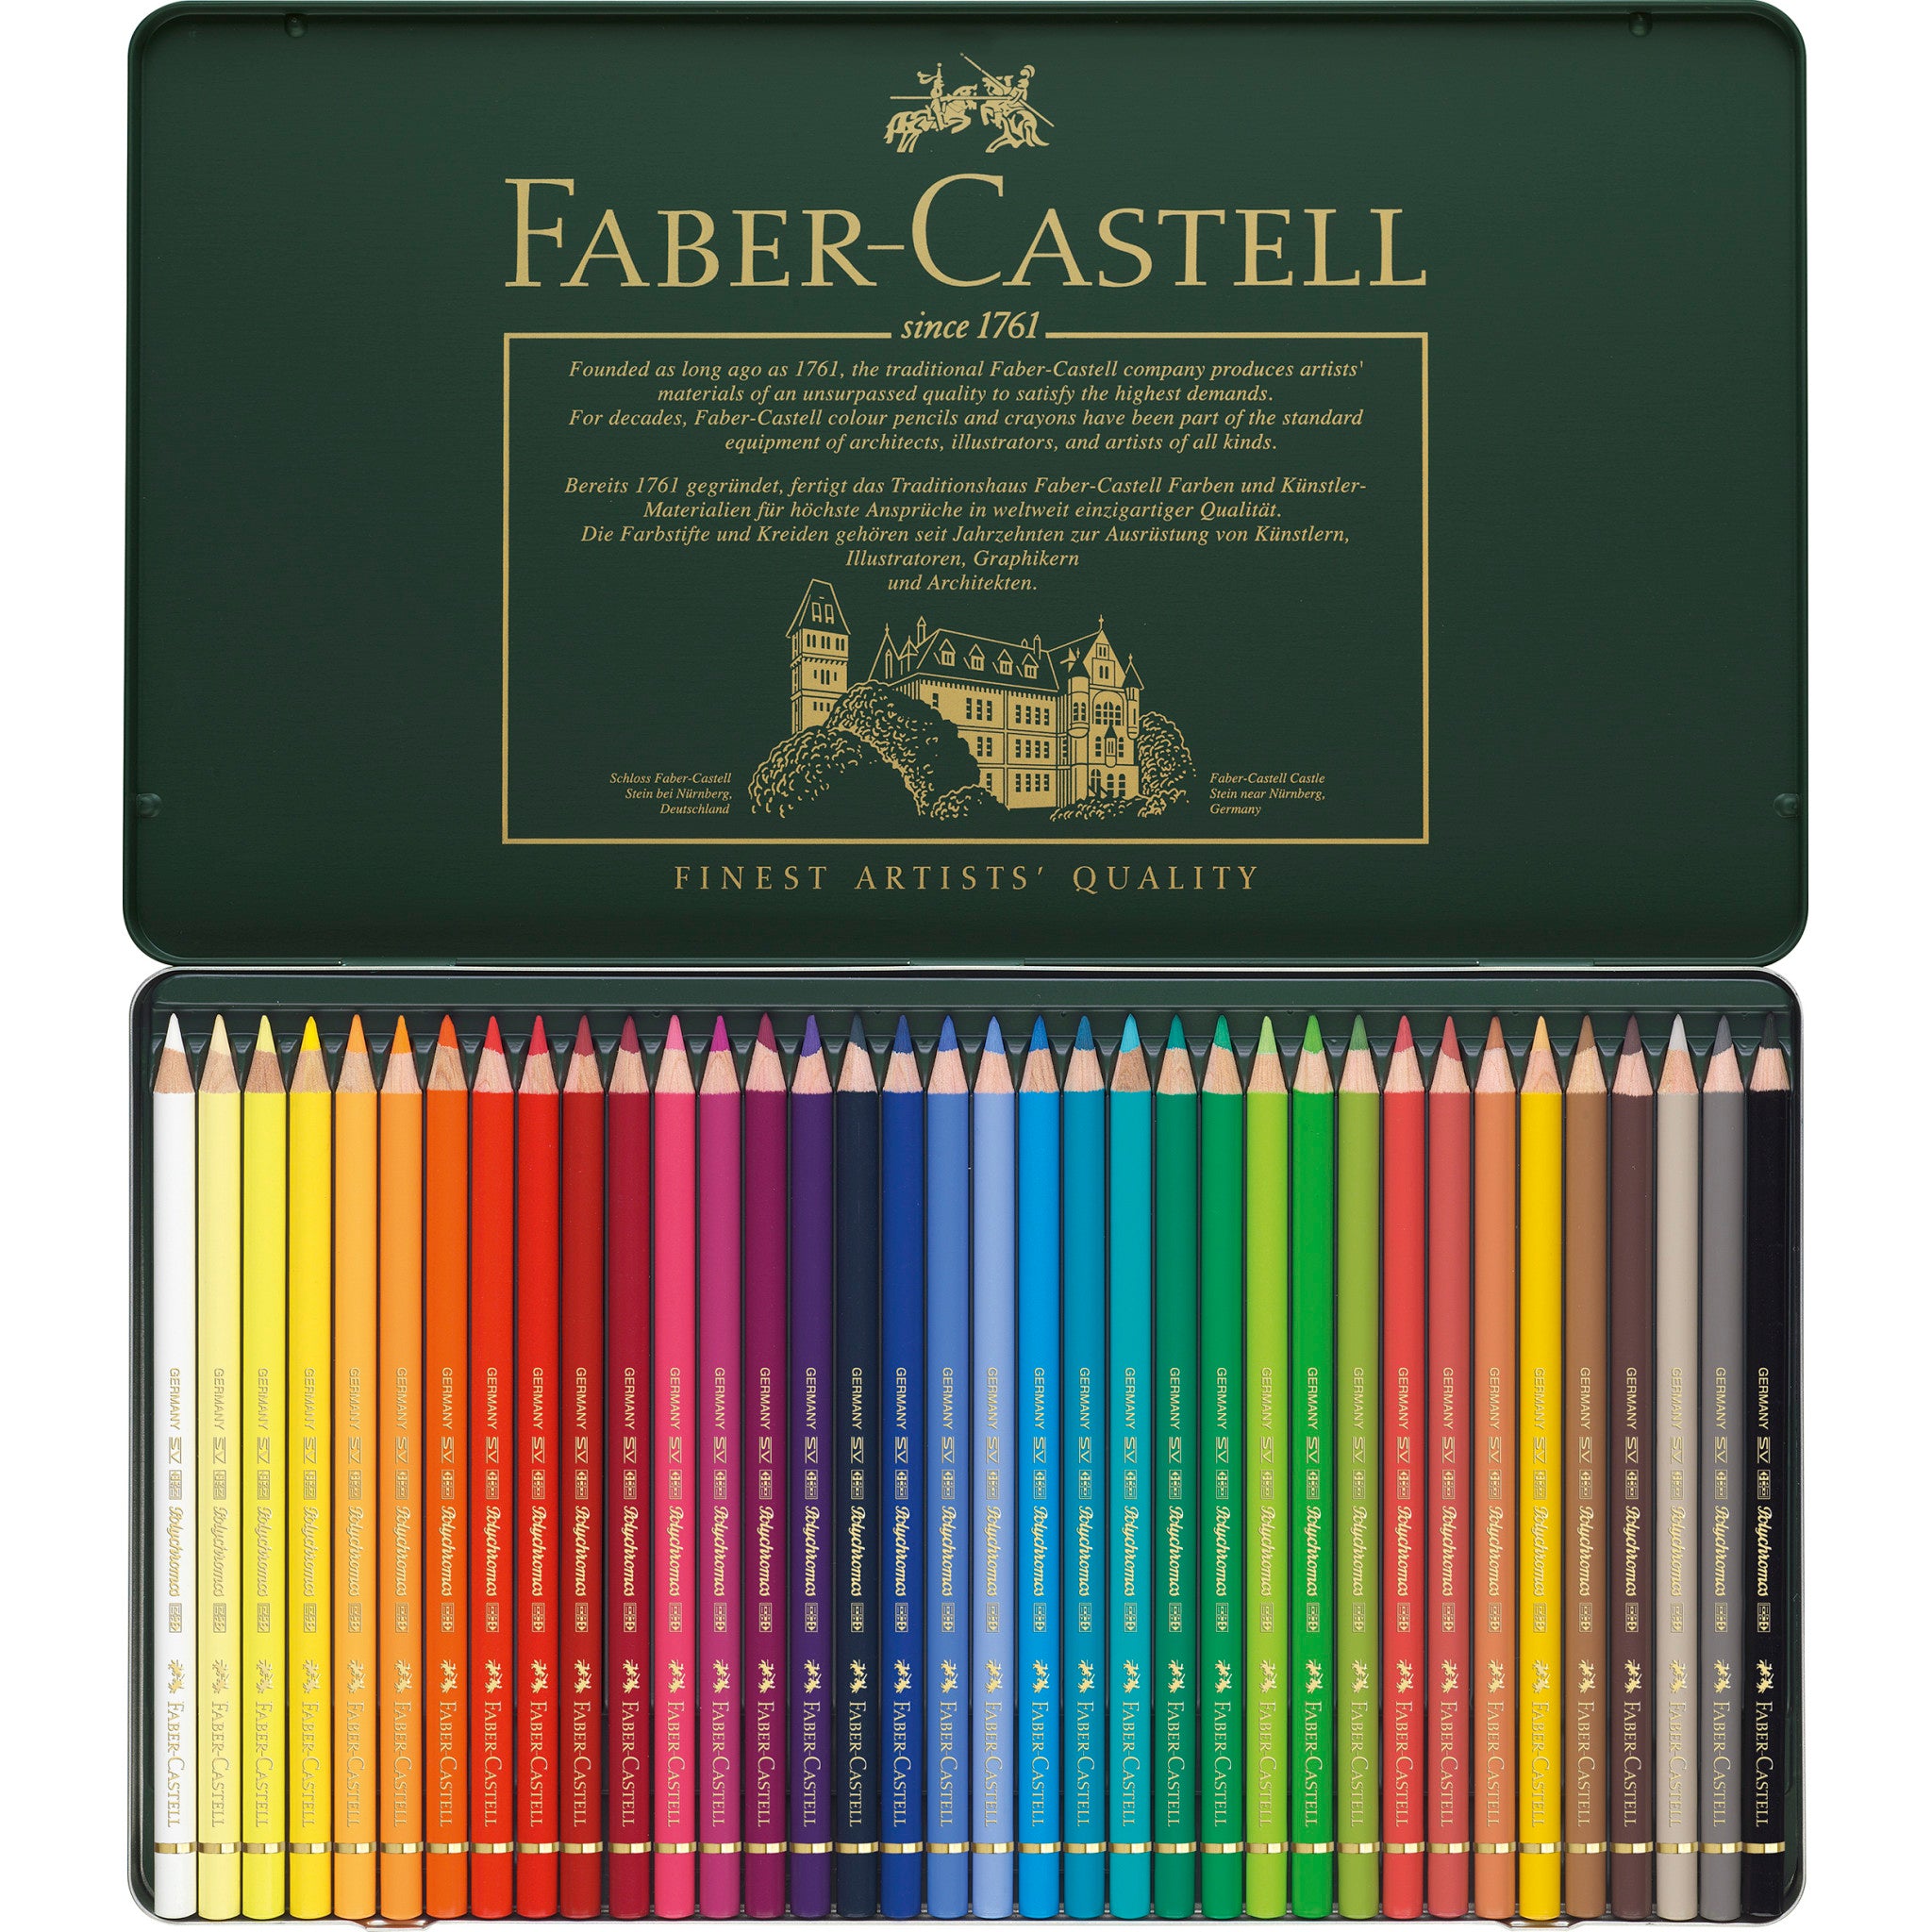 Faber-Castell Polychromos 36 Pencil Studio Set